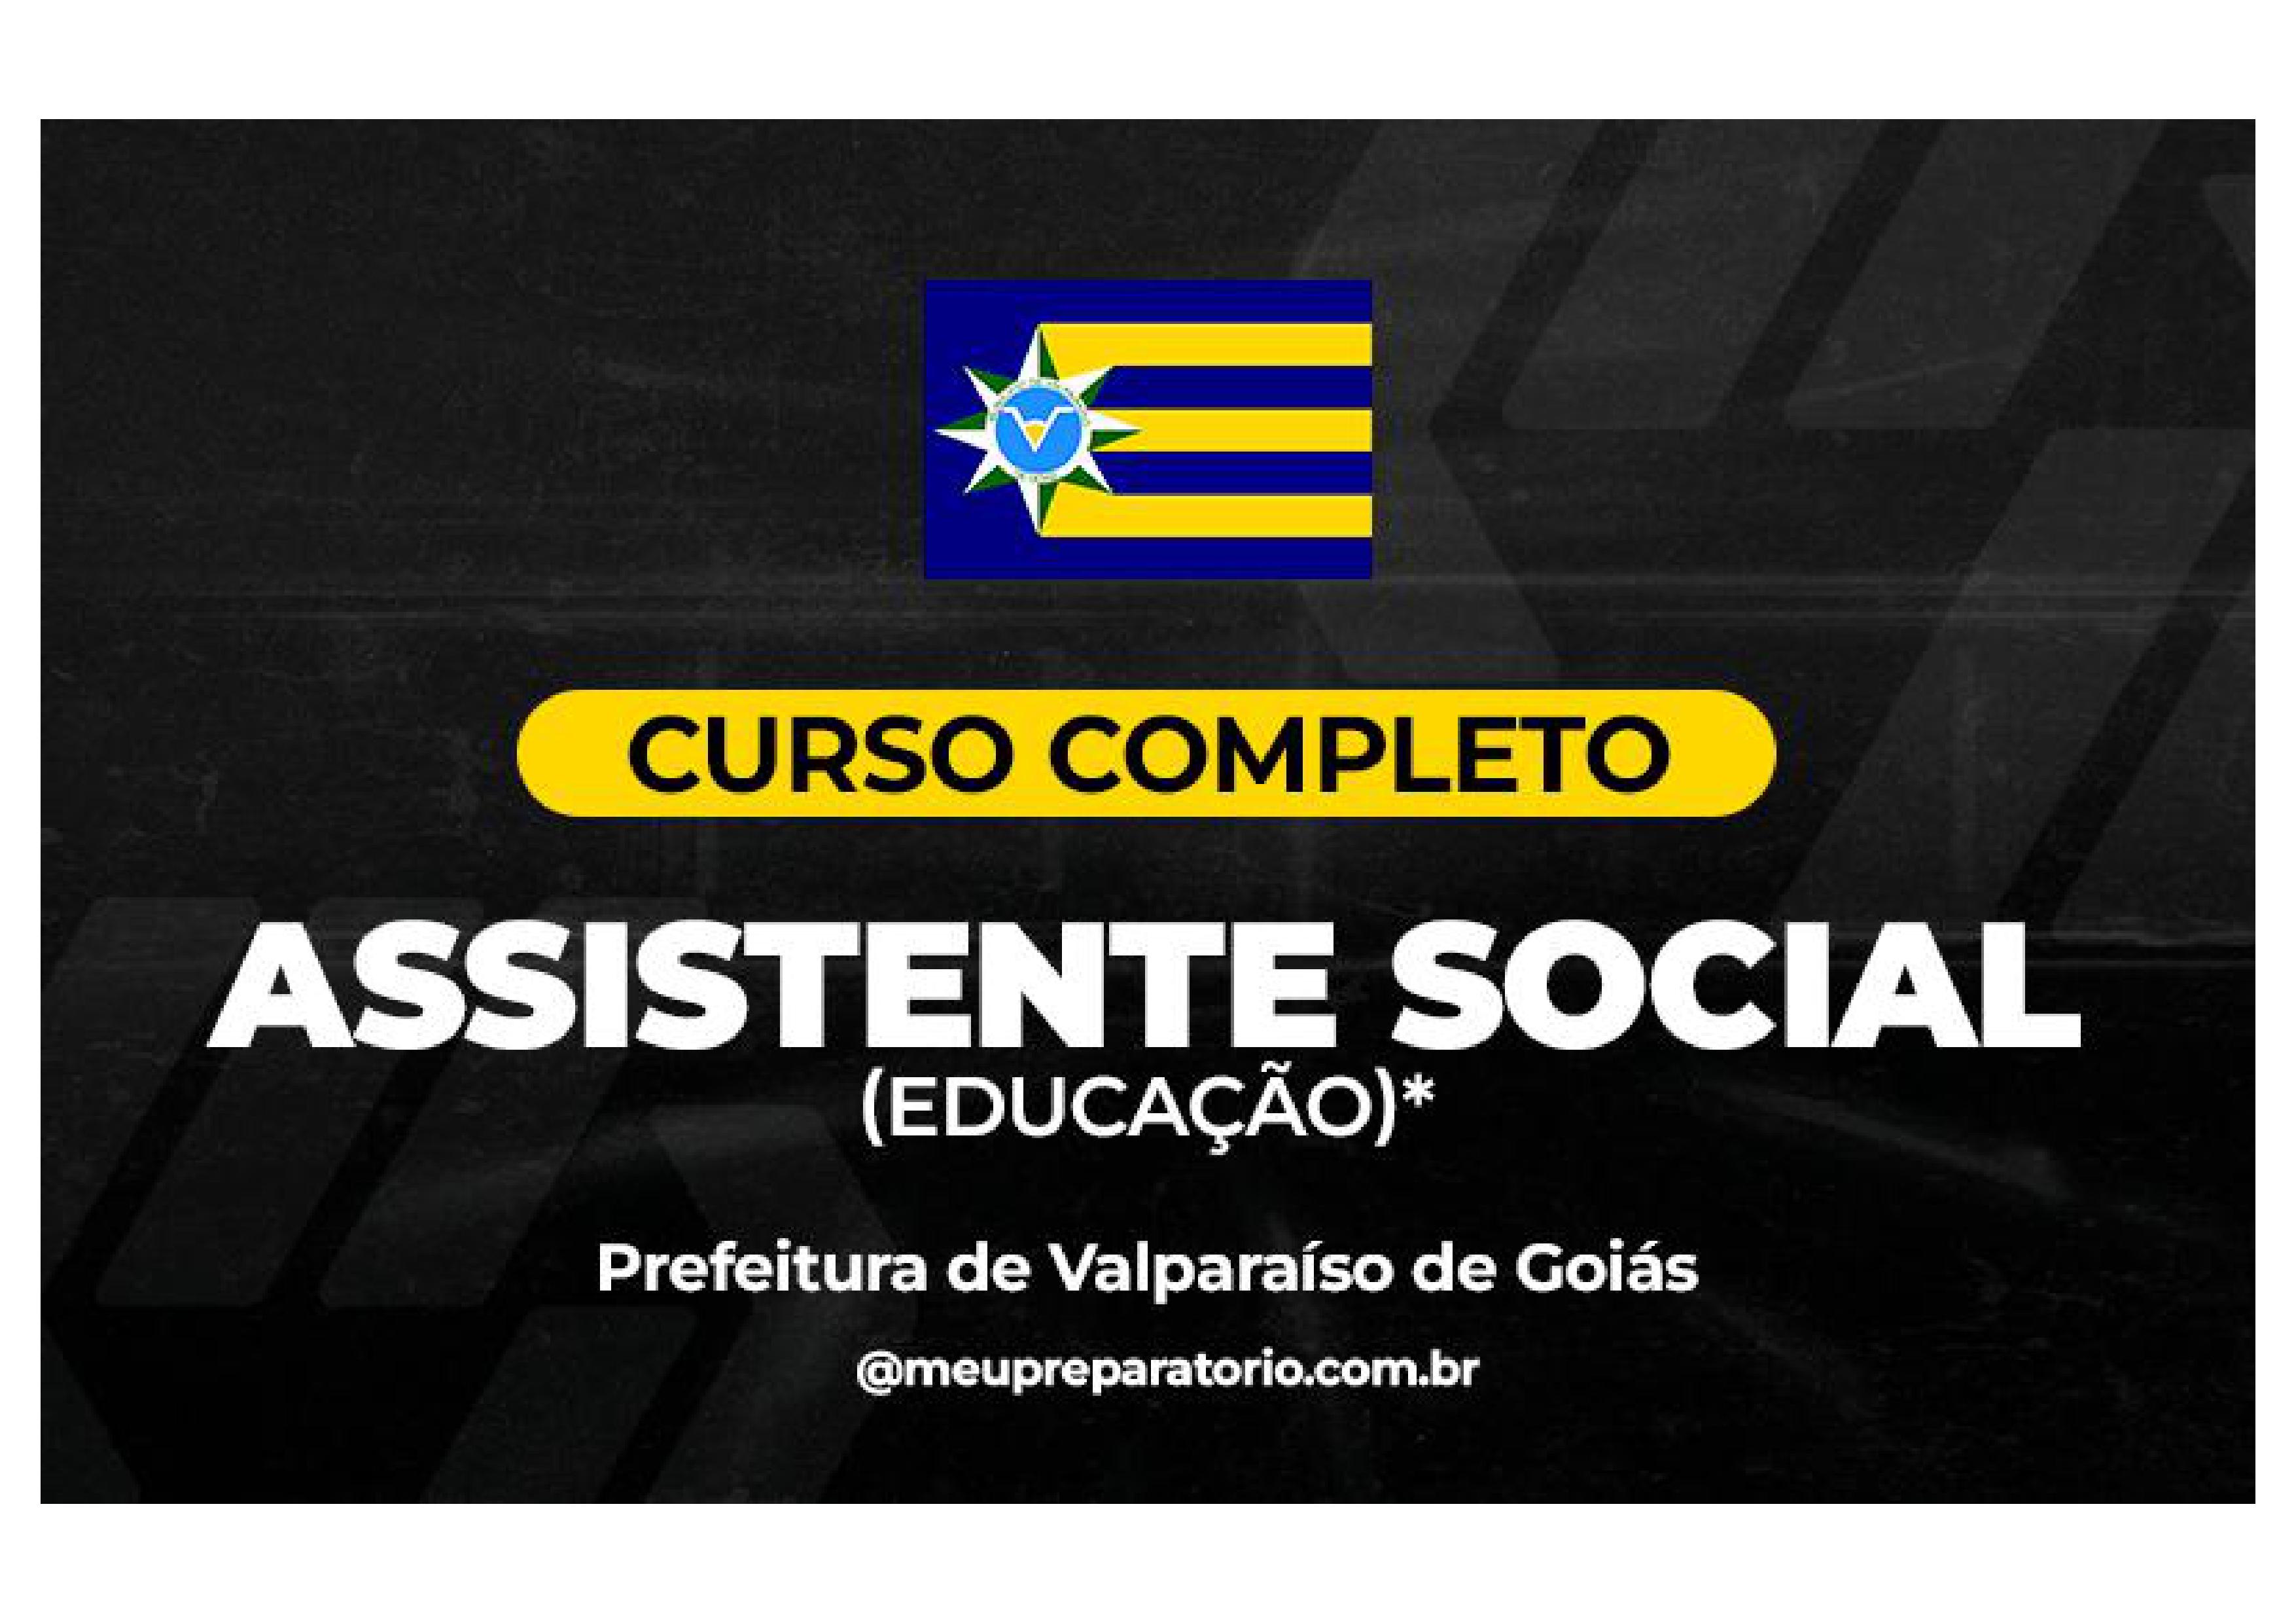 Assistente Social (Educação) - Valparaíso (GO)